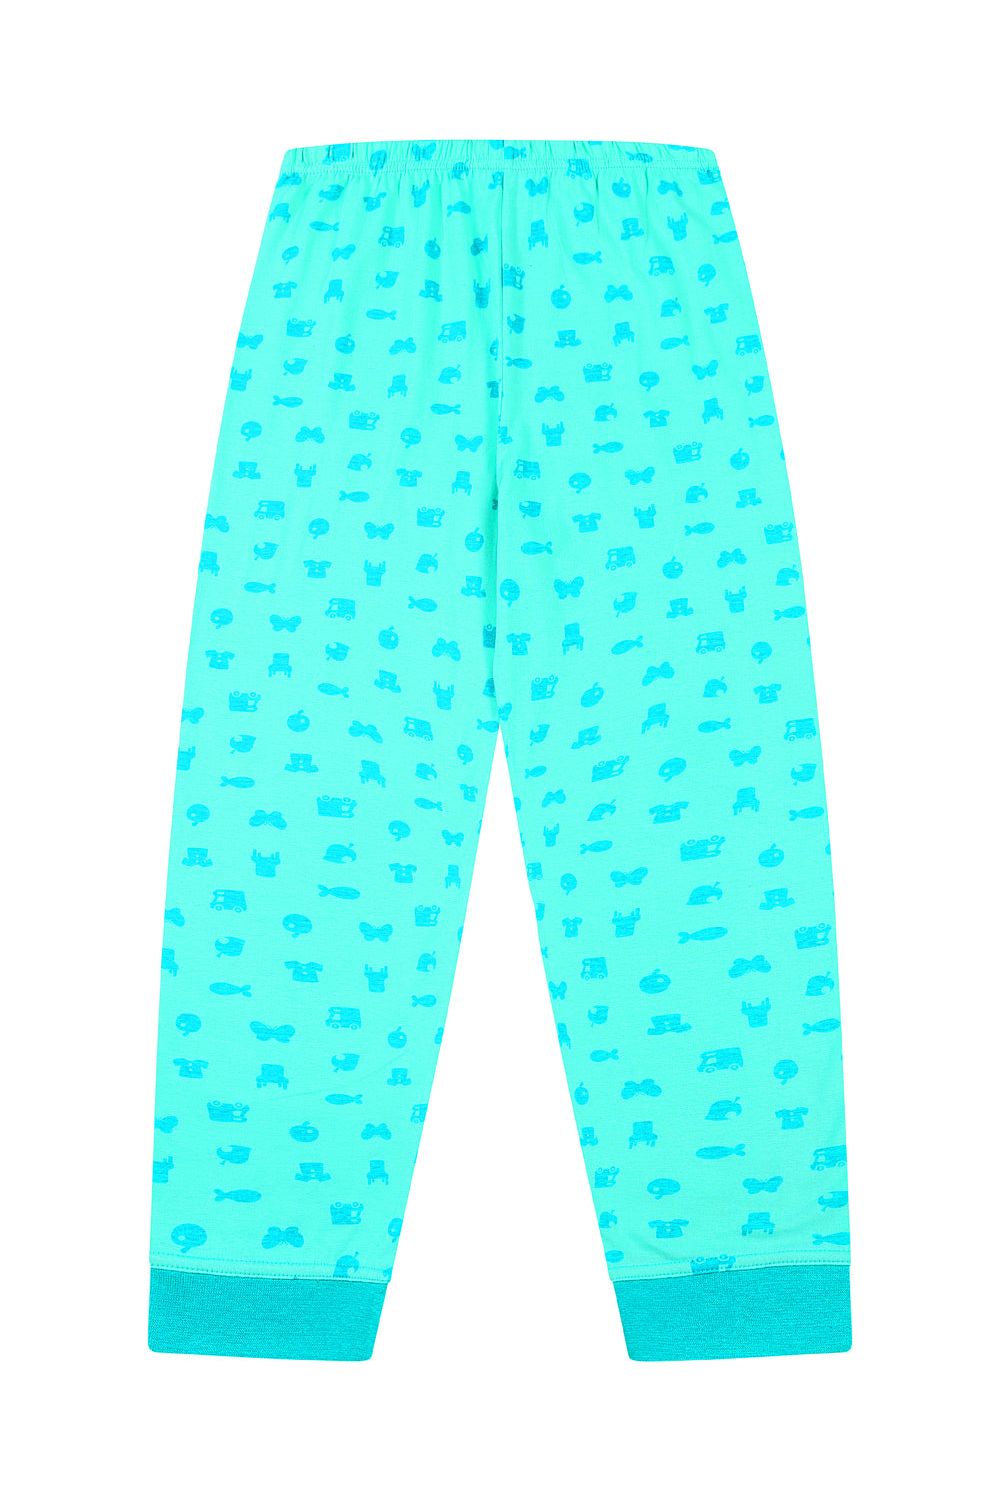 Ladies Official Nintendo Animal Crossing Gaming Long Pyjamas - Pyjamas.com